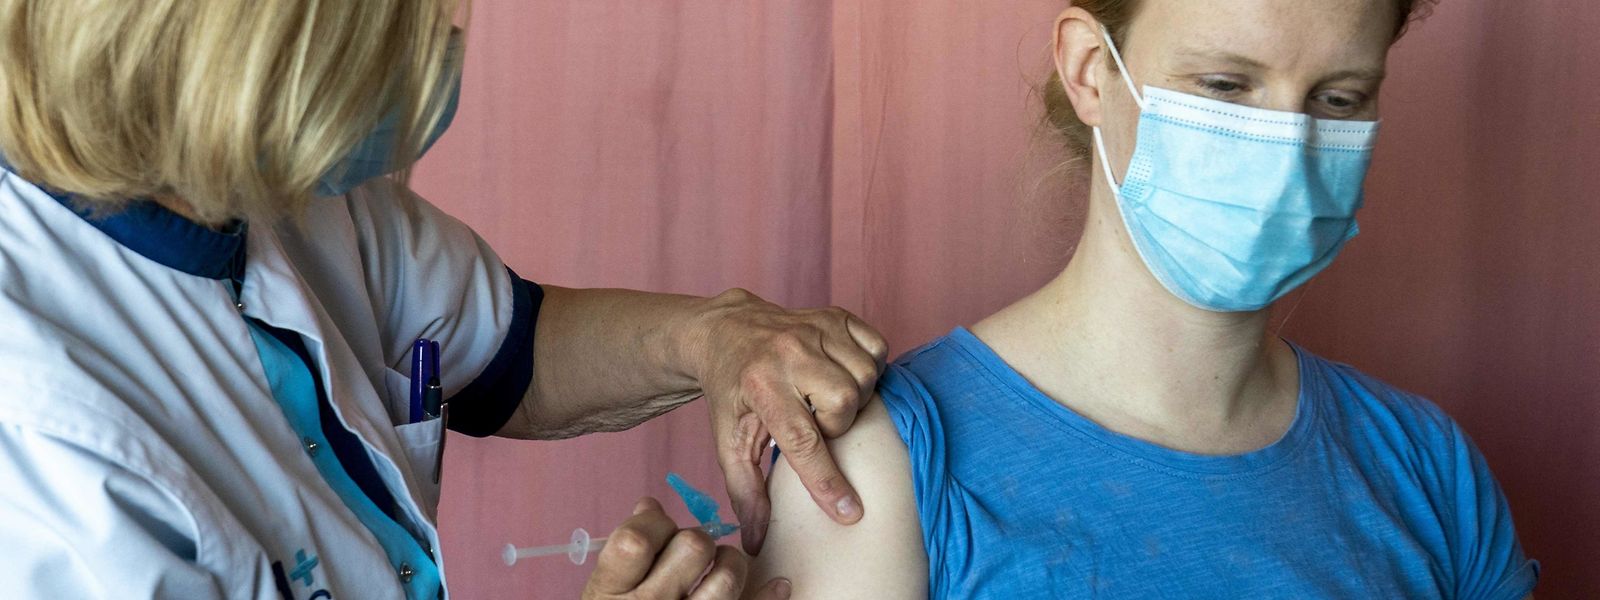 Près de 70% des effets indésirables signalés au Grand-Duché l'ont été par des femmes vaccinées.